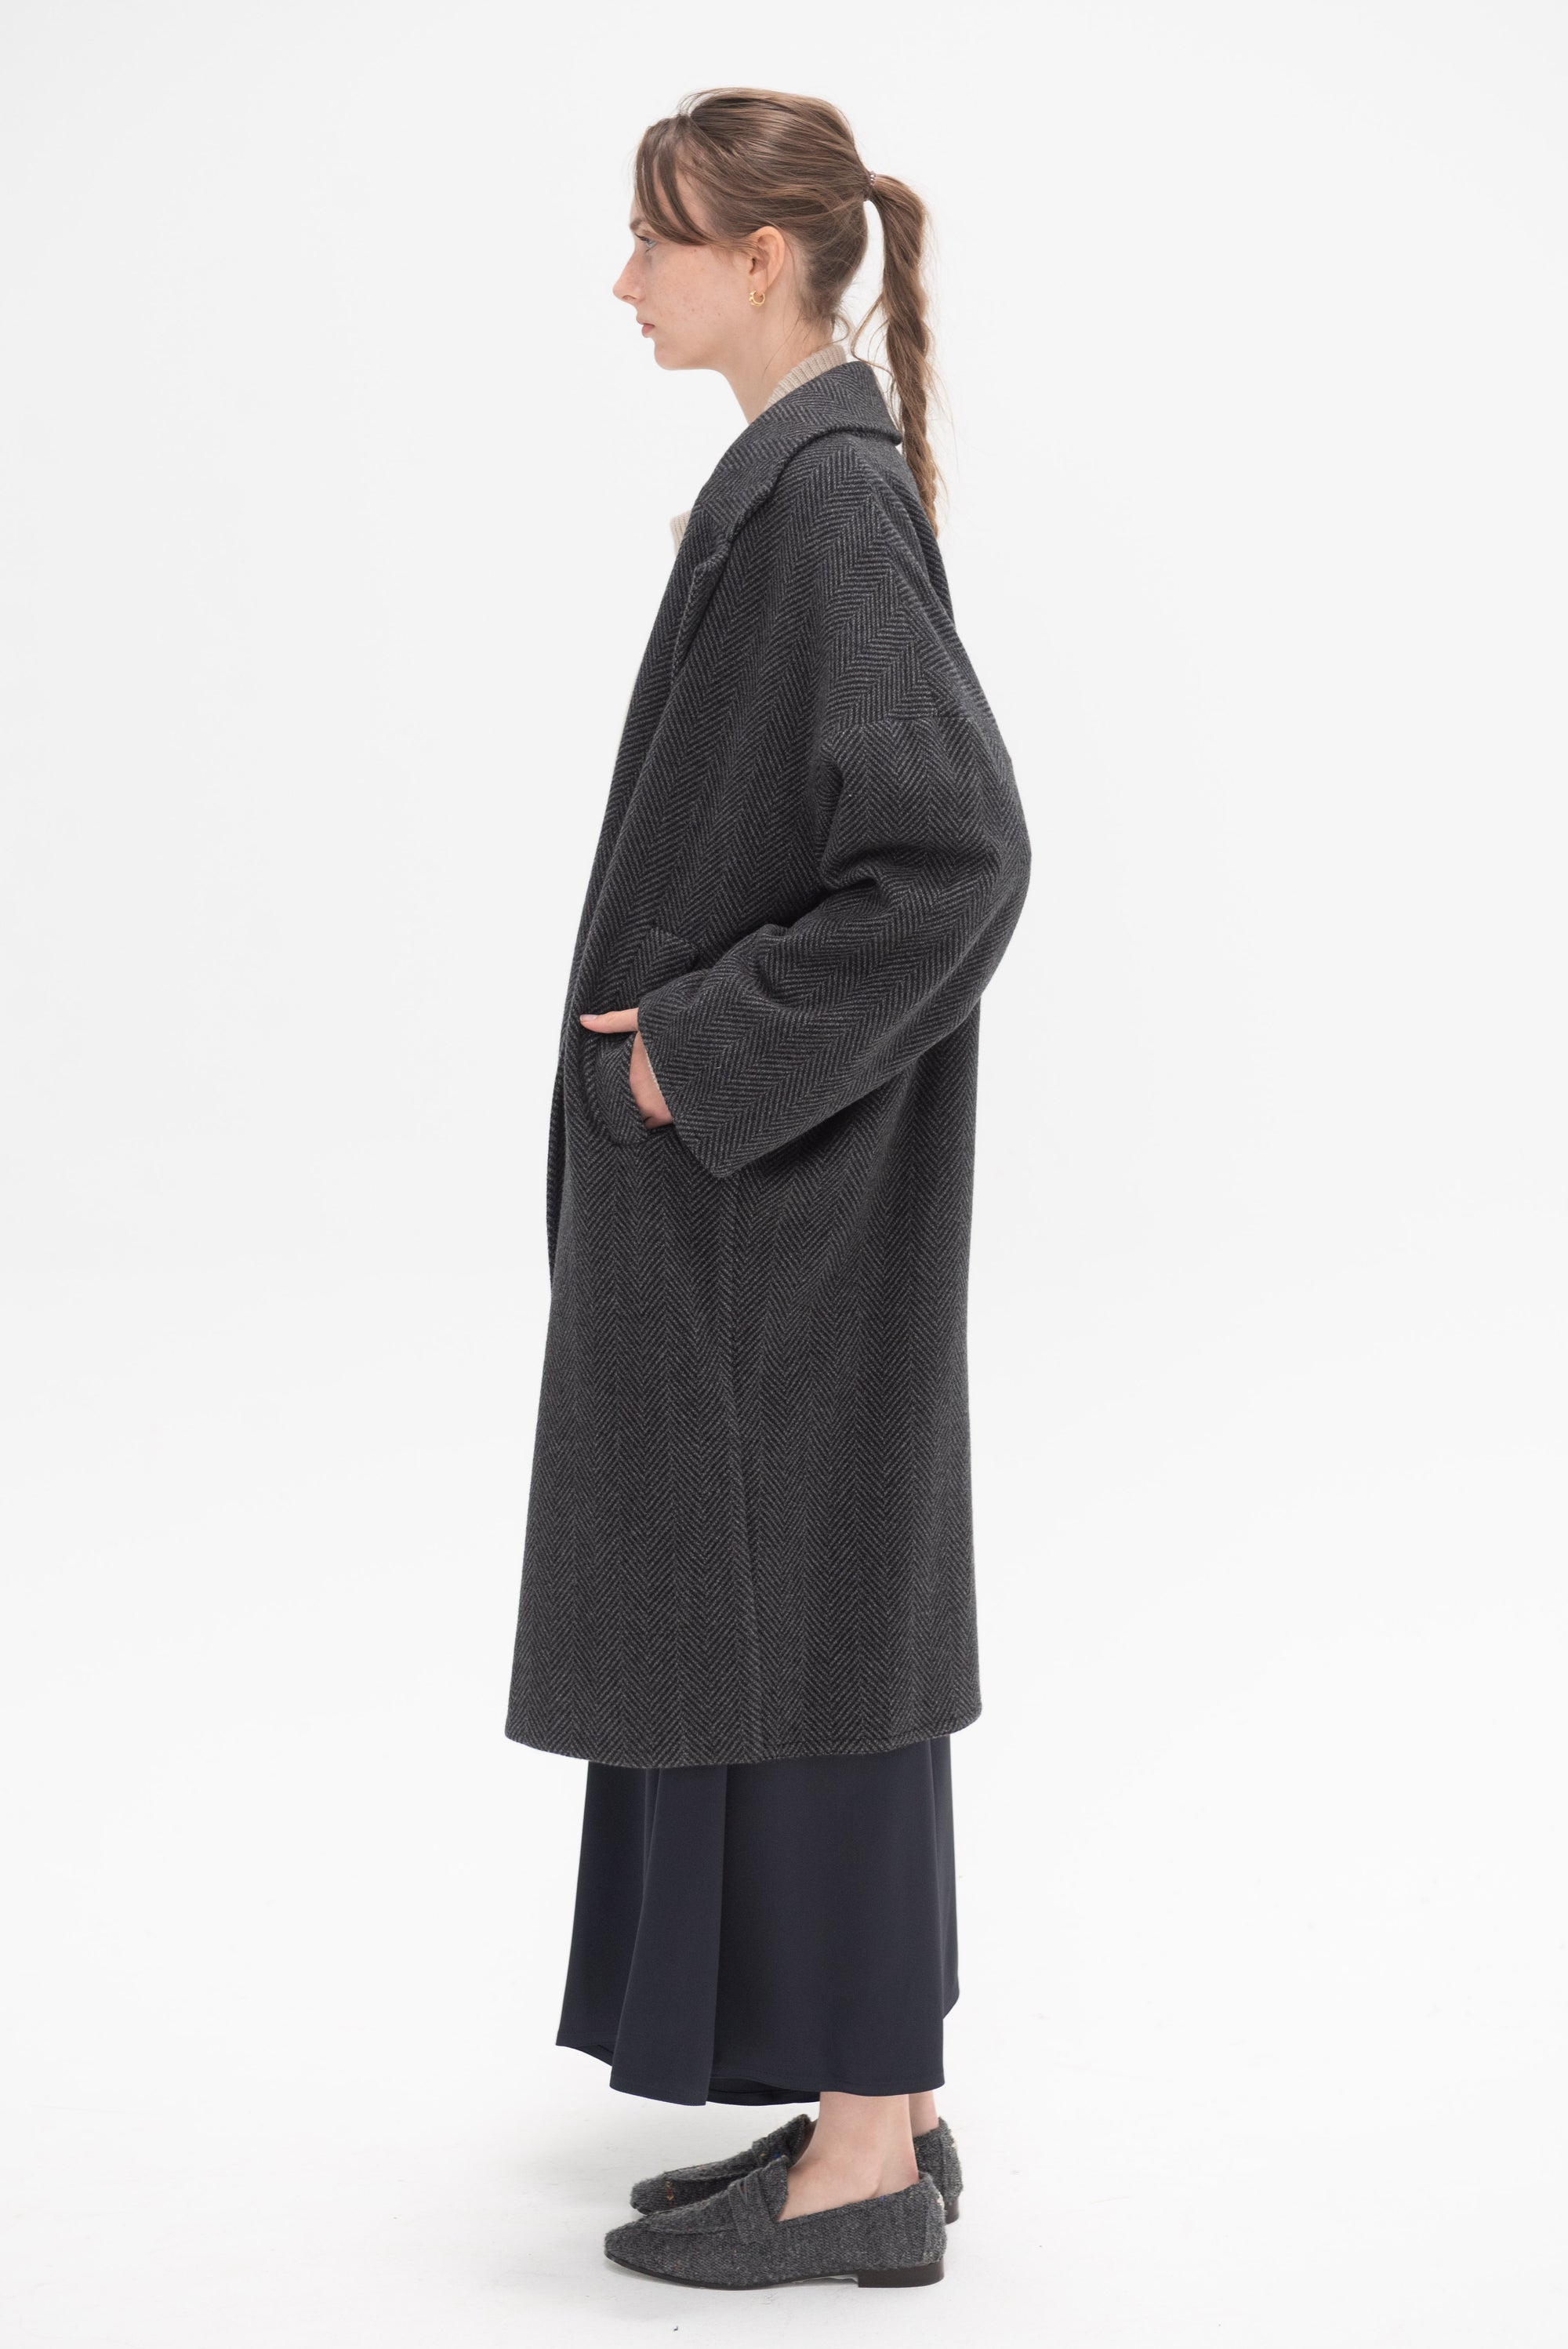 DUŠAN - Oversized Coat, Grey